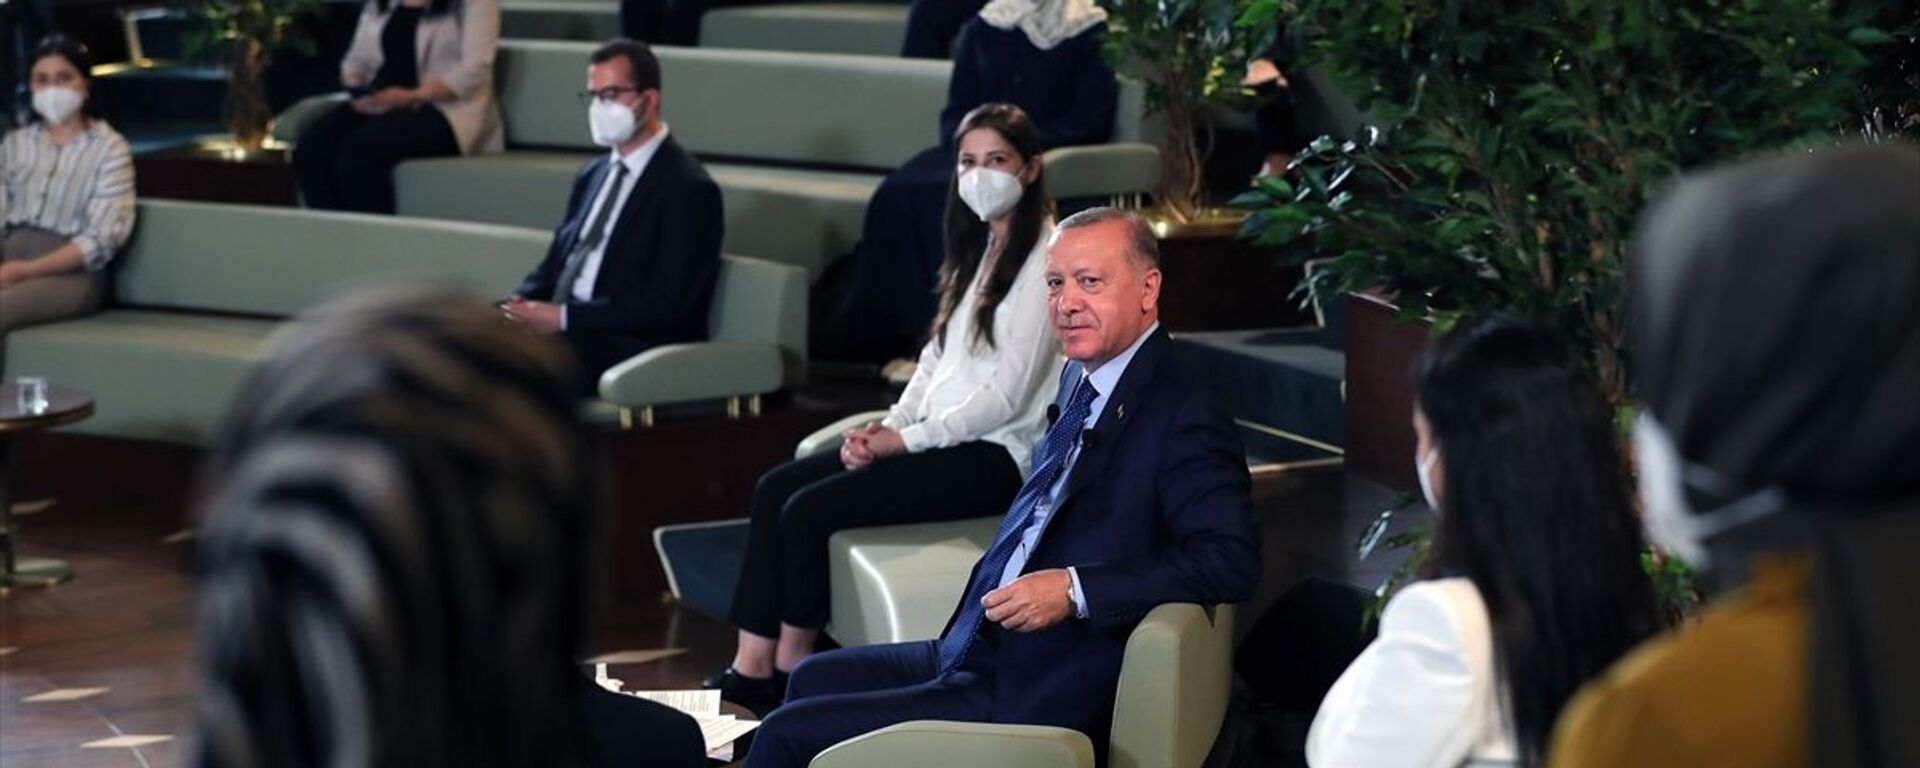 Cumhurbaşkanı Recep Tayyip Erdoğan, Kütüphane Söyleşileri'nin üçüncüsünde Millet Kütüphanesi'nde doktora öğrencileriyle bir araya geldi. - Sputnik Türkiye, 1920, 02.07.2021